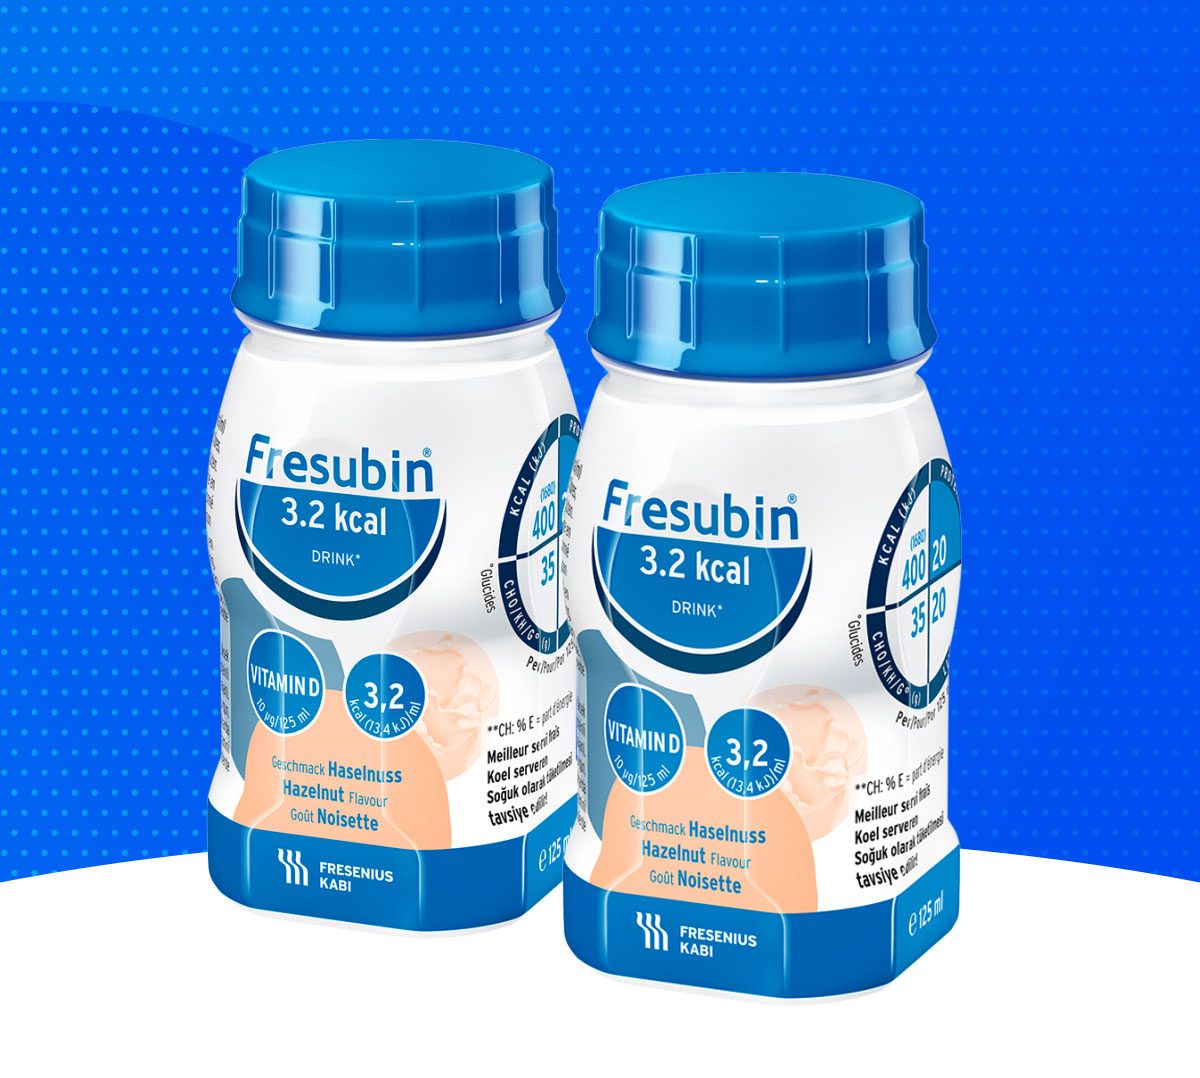 Conheça melhor o Fresubin 3.2kcal Drink